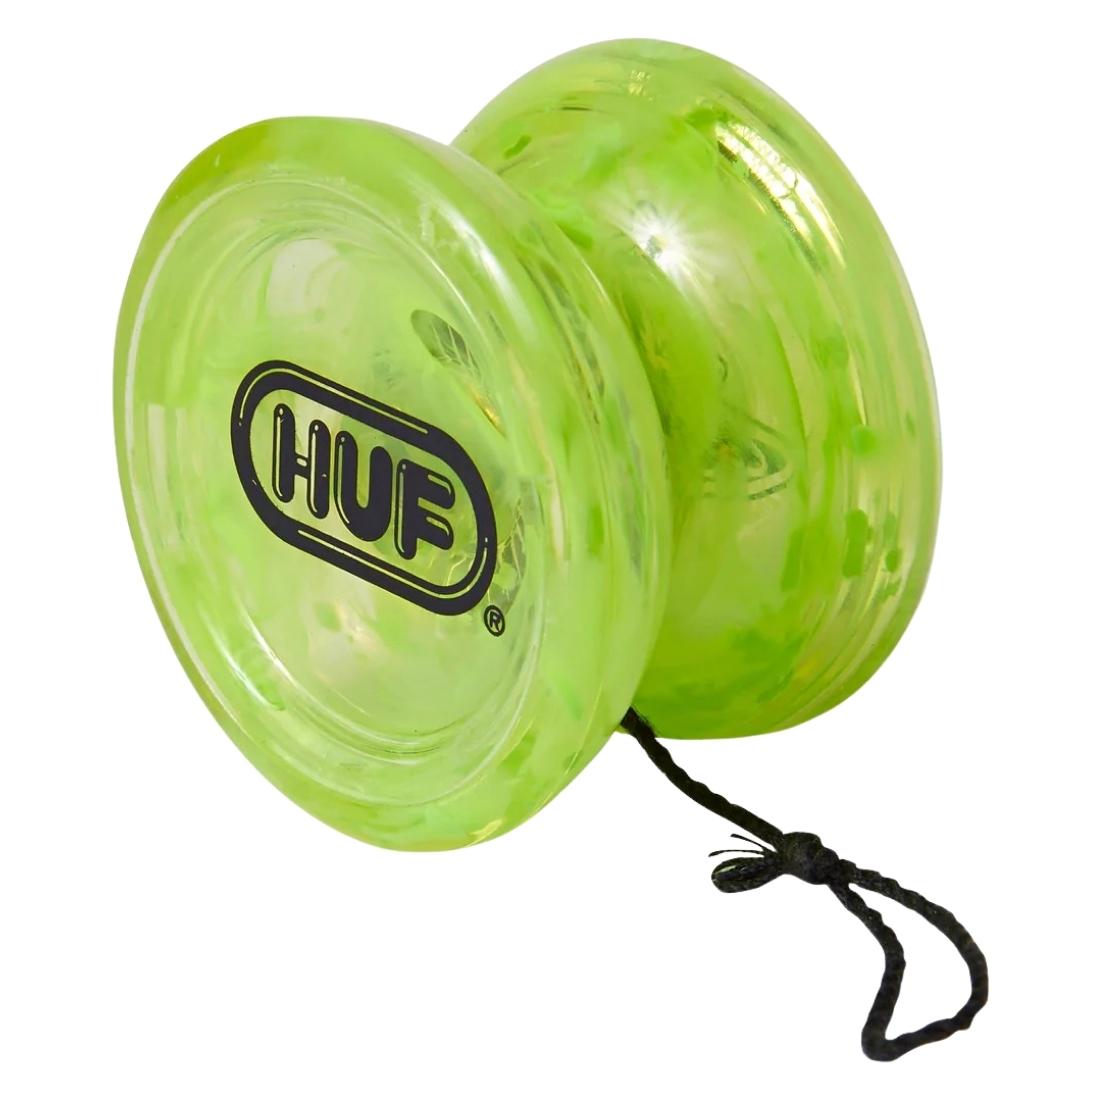 Huf X Duncan Yo-Yo - Huf Green - Gifts for Skateboarders by Huf